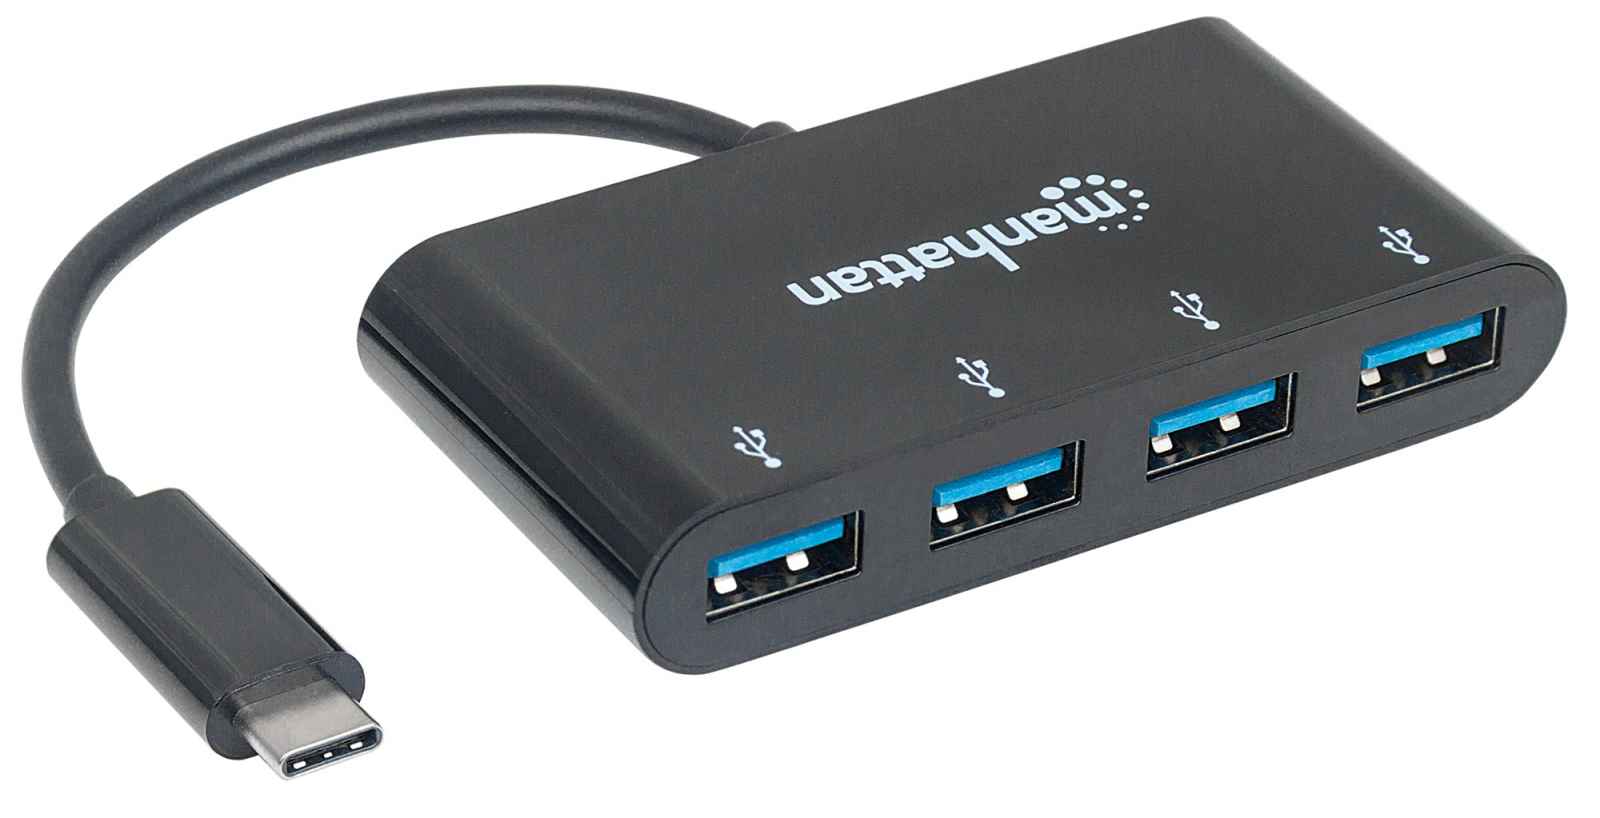 Base de carga multidispositivo 6 puertos USB y 1 puerto USB tipo C - 4Smart  - Spain